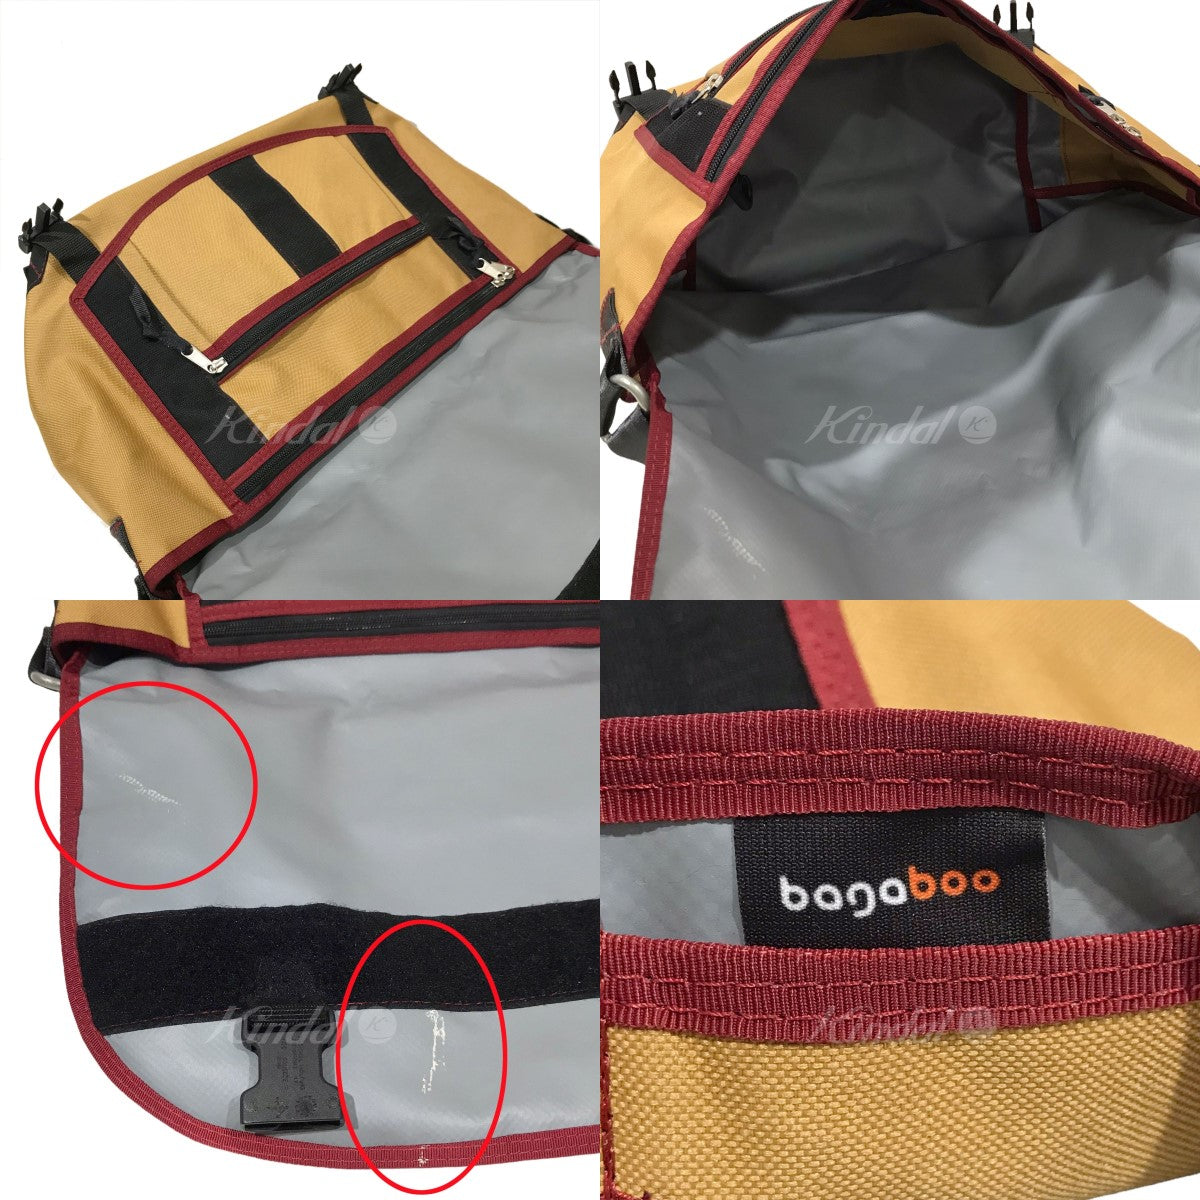 BAGABOO(バガブー) メッセンジャーバッグ MESSENGER BAG